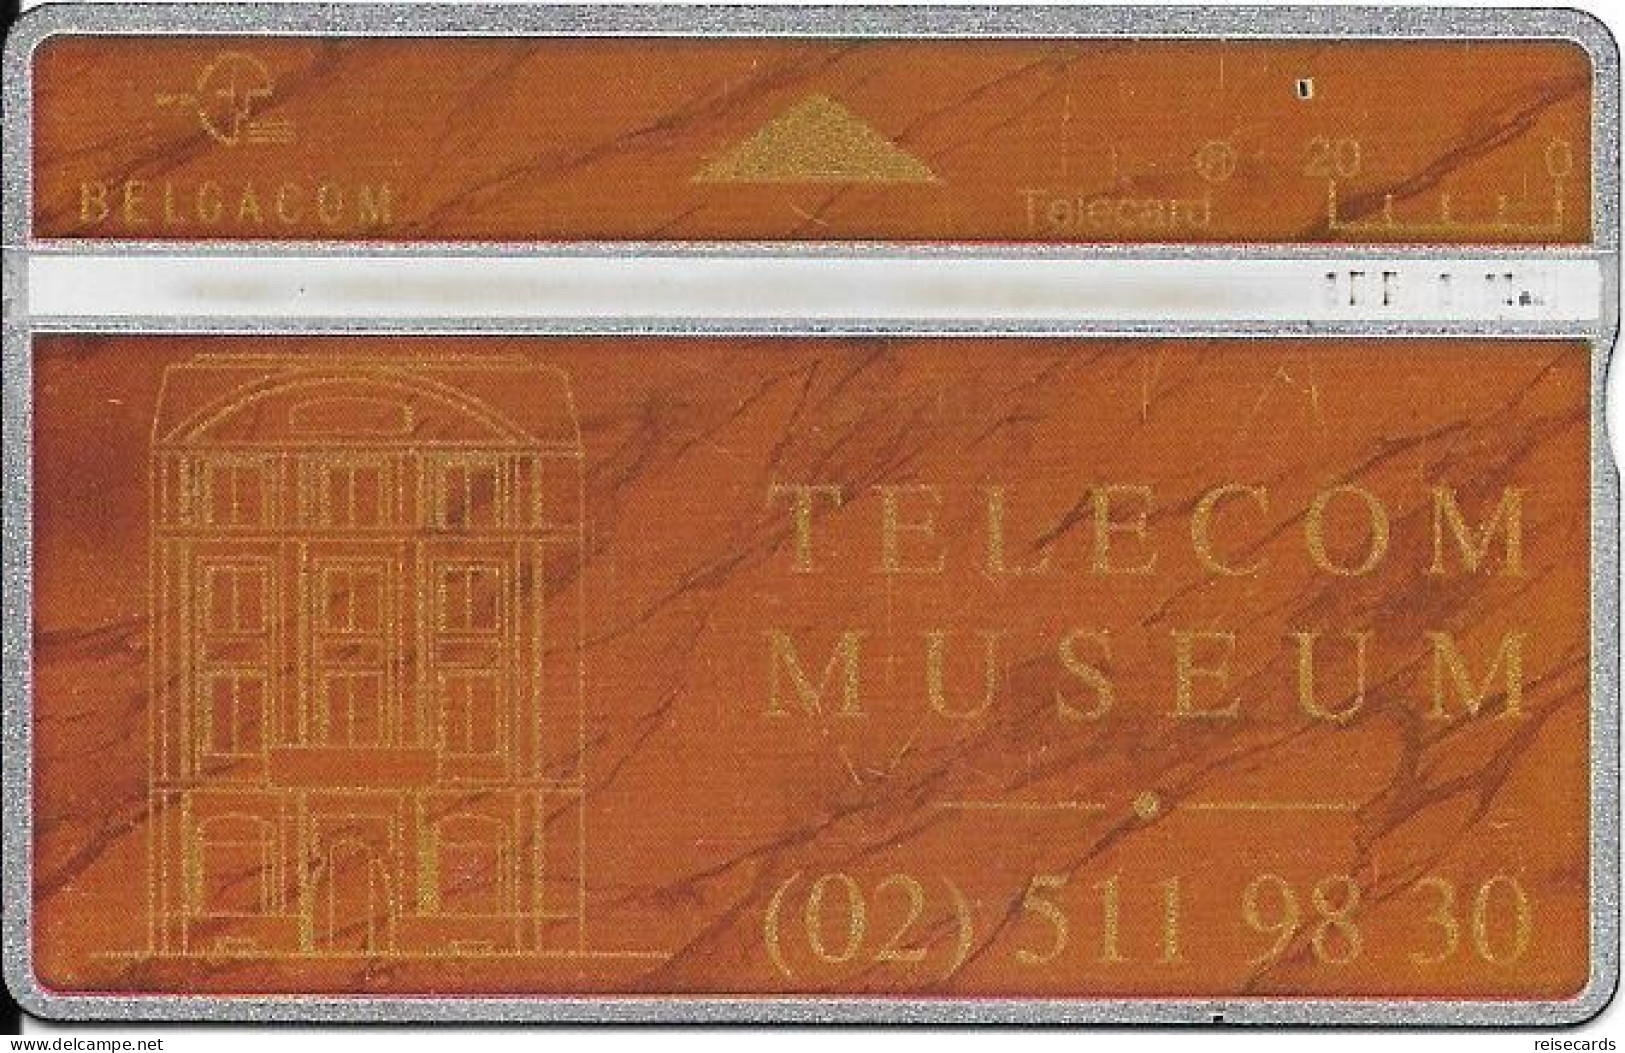 Belgium: Belgacom 407E Telecom Museum - Senza Chip